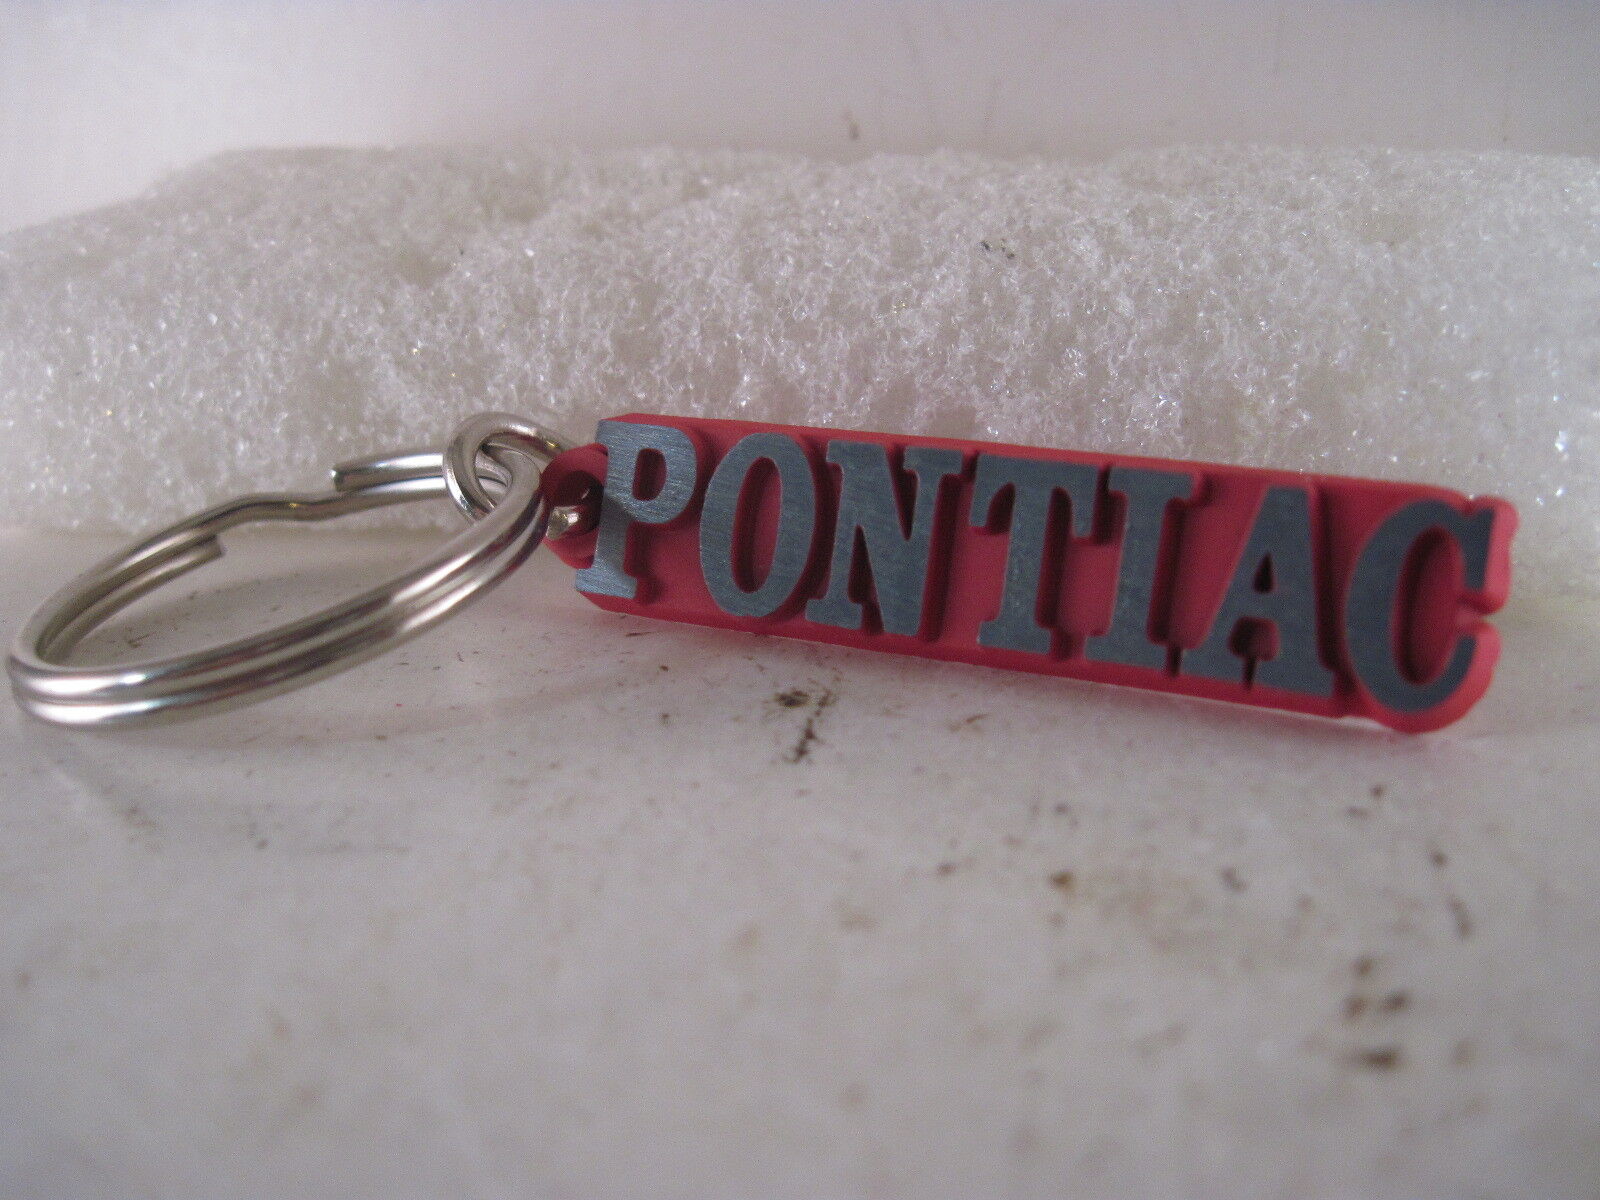  Pontiac    Key Chain  mint new  (5jl30  19 )